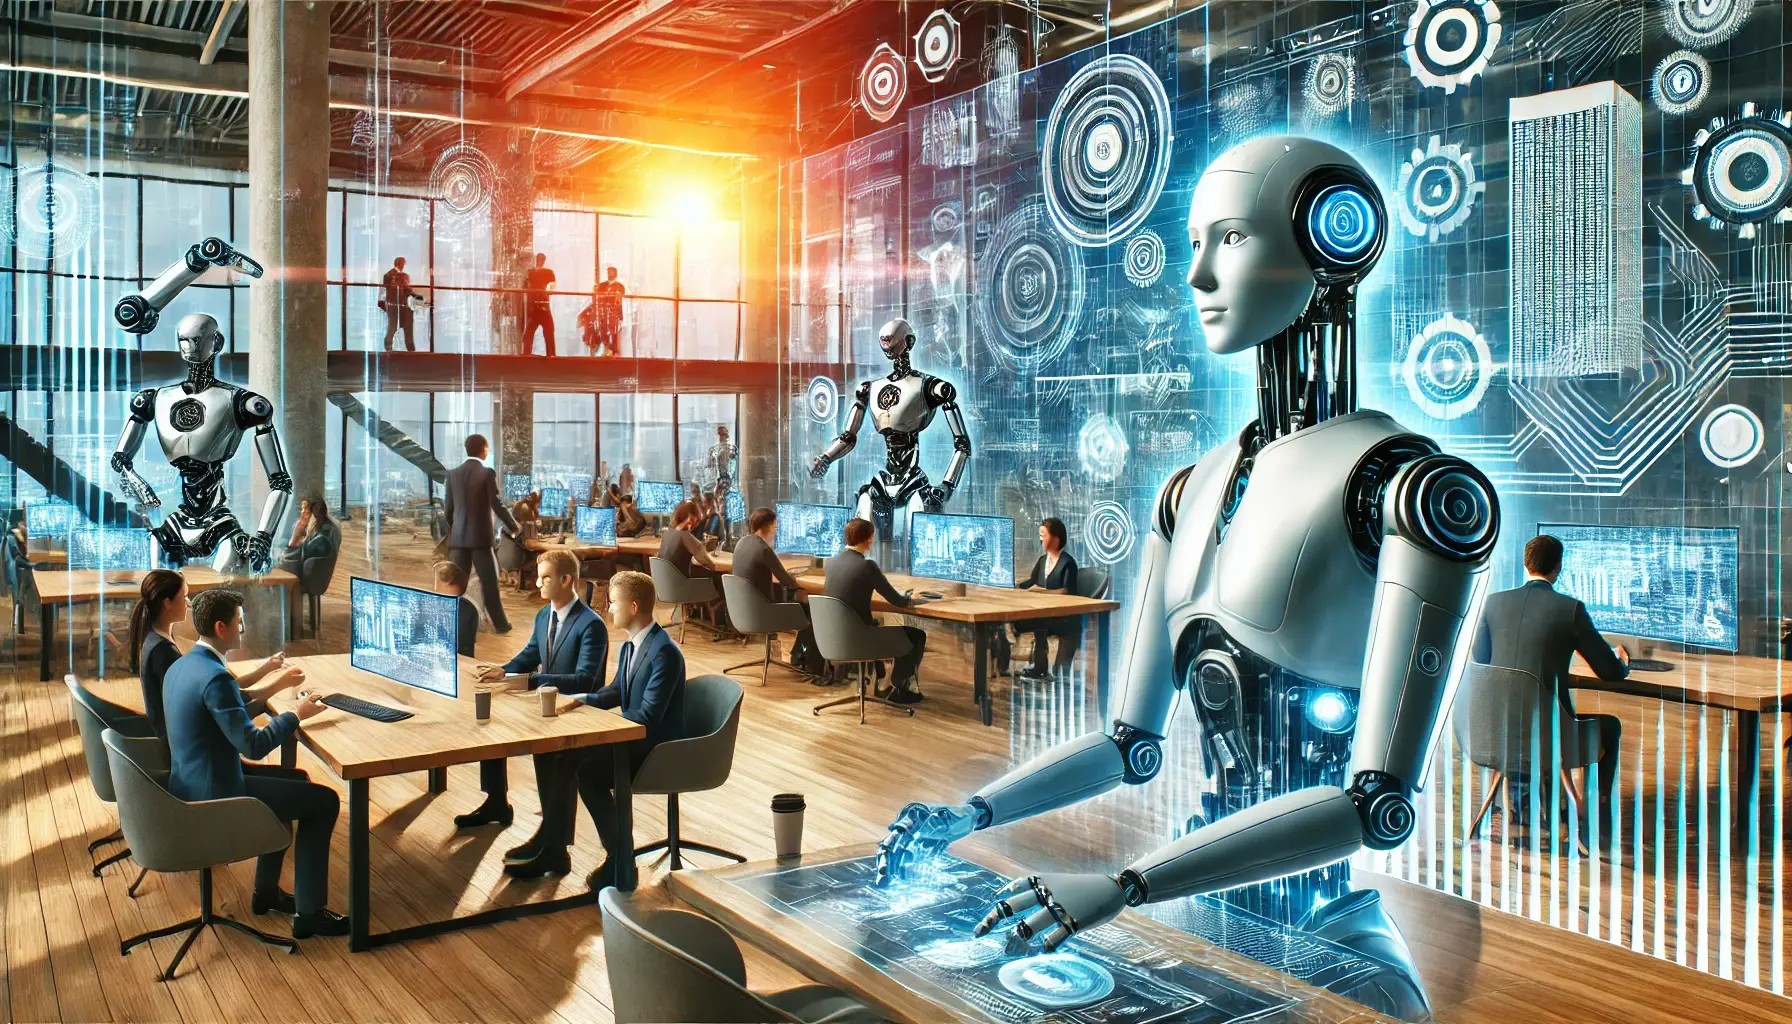 Inteligência Artificial: Impacto no Mercado de Trabalho

Vivemos em uma era em que a Inteligência Artificial (IA) está se tornando cada vez mais presente em nosso dia a dia. Não apenas em nossas casas e dispositivos eletrônicos, mas também no local de trabalho. Com o avanço rápido dessa tecnologia, as mudanças no mercado de trabalho são inevitáveis.